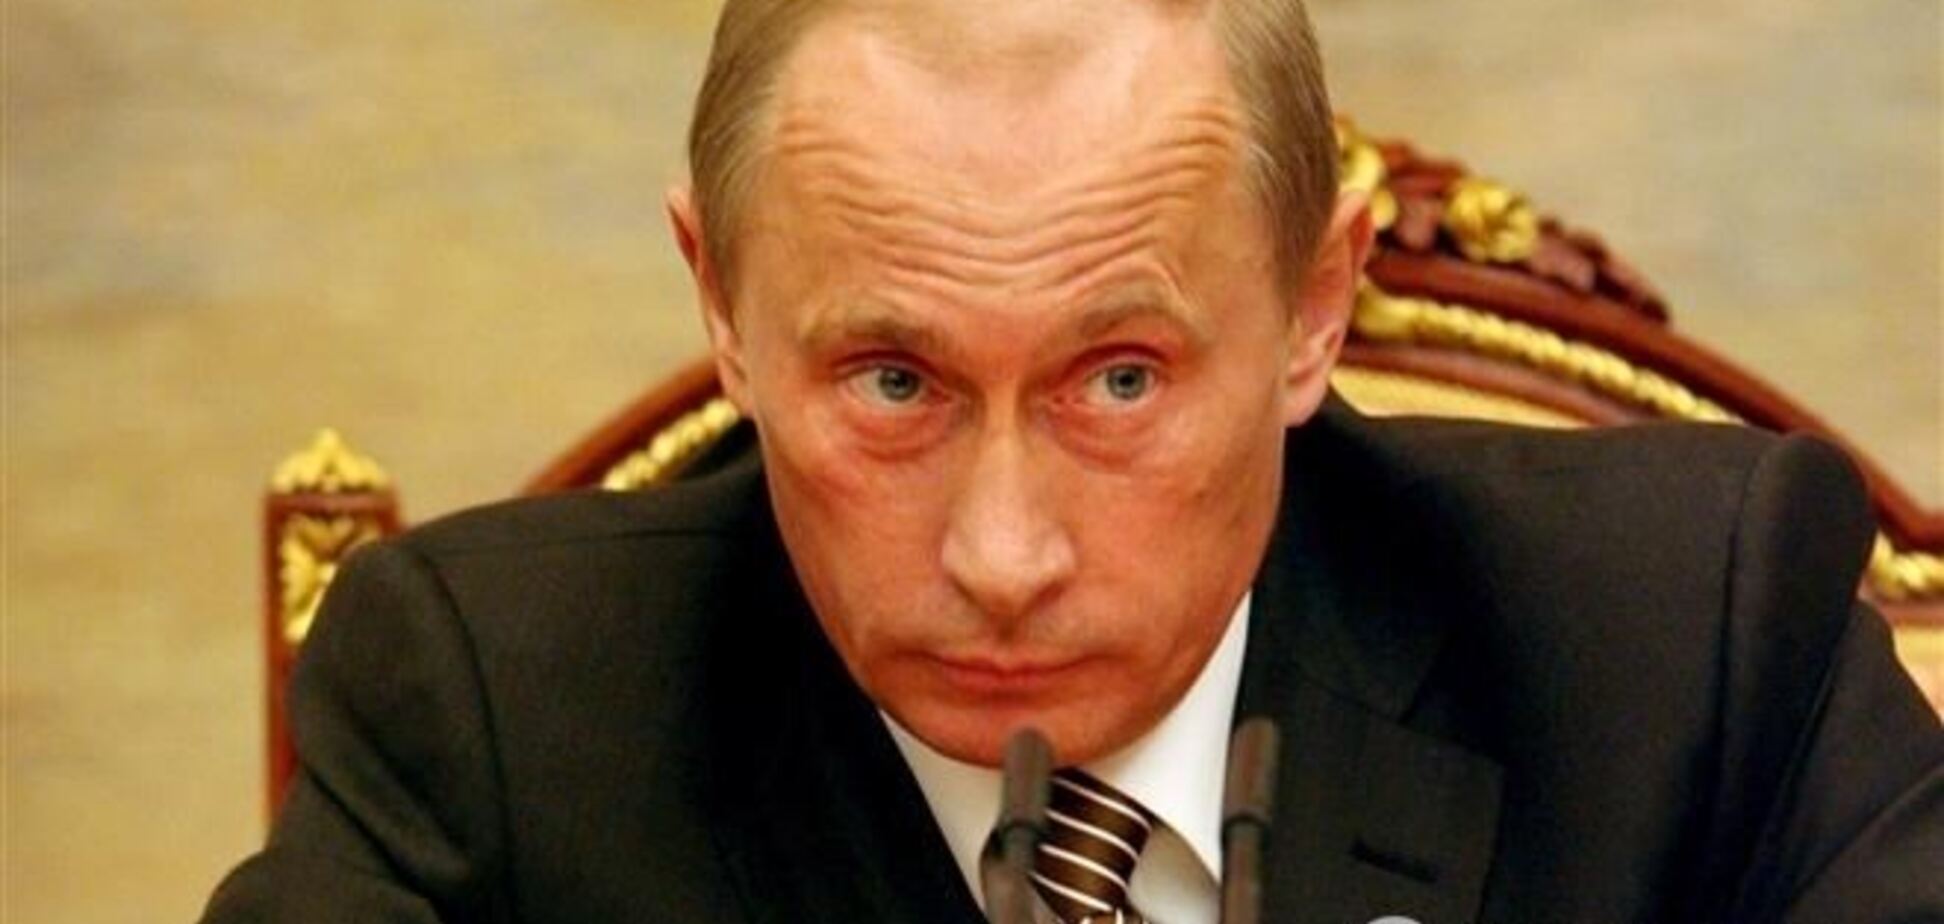  Путин требует от российского правительства исполнить договоренности с Украиной